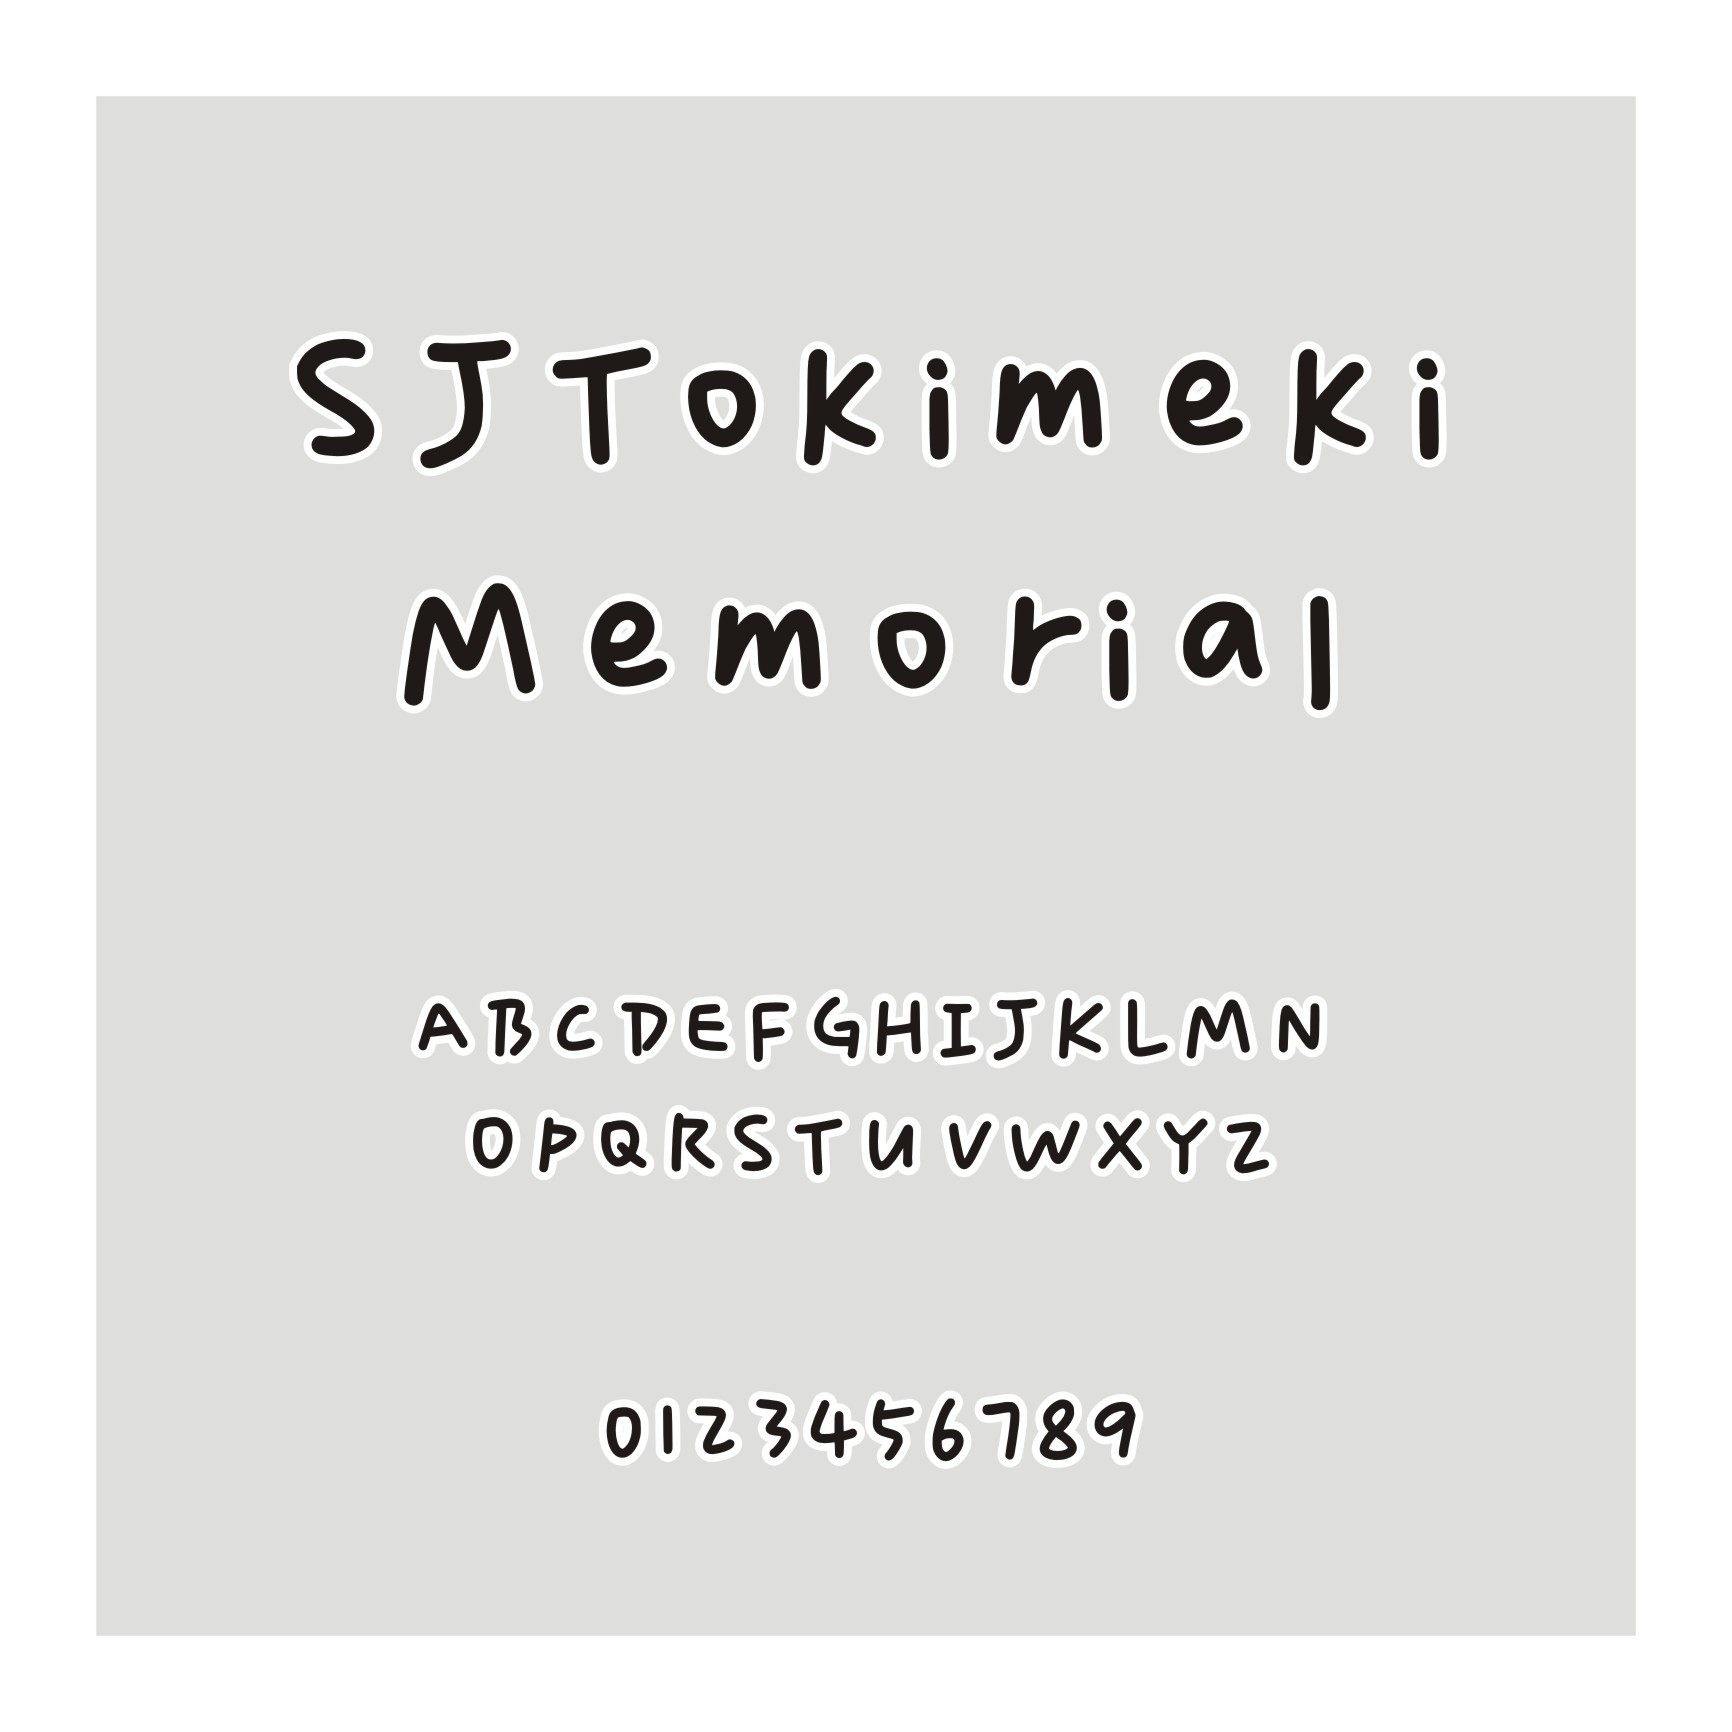 SJTokimeki Memorial